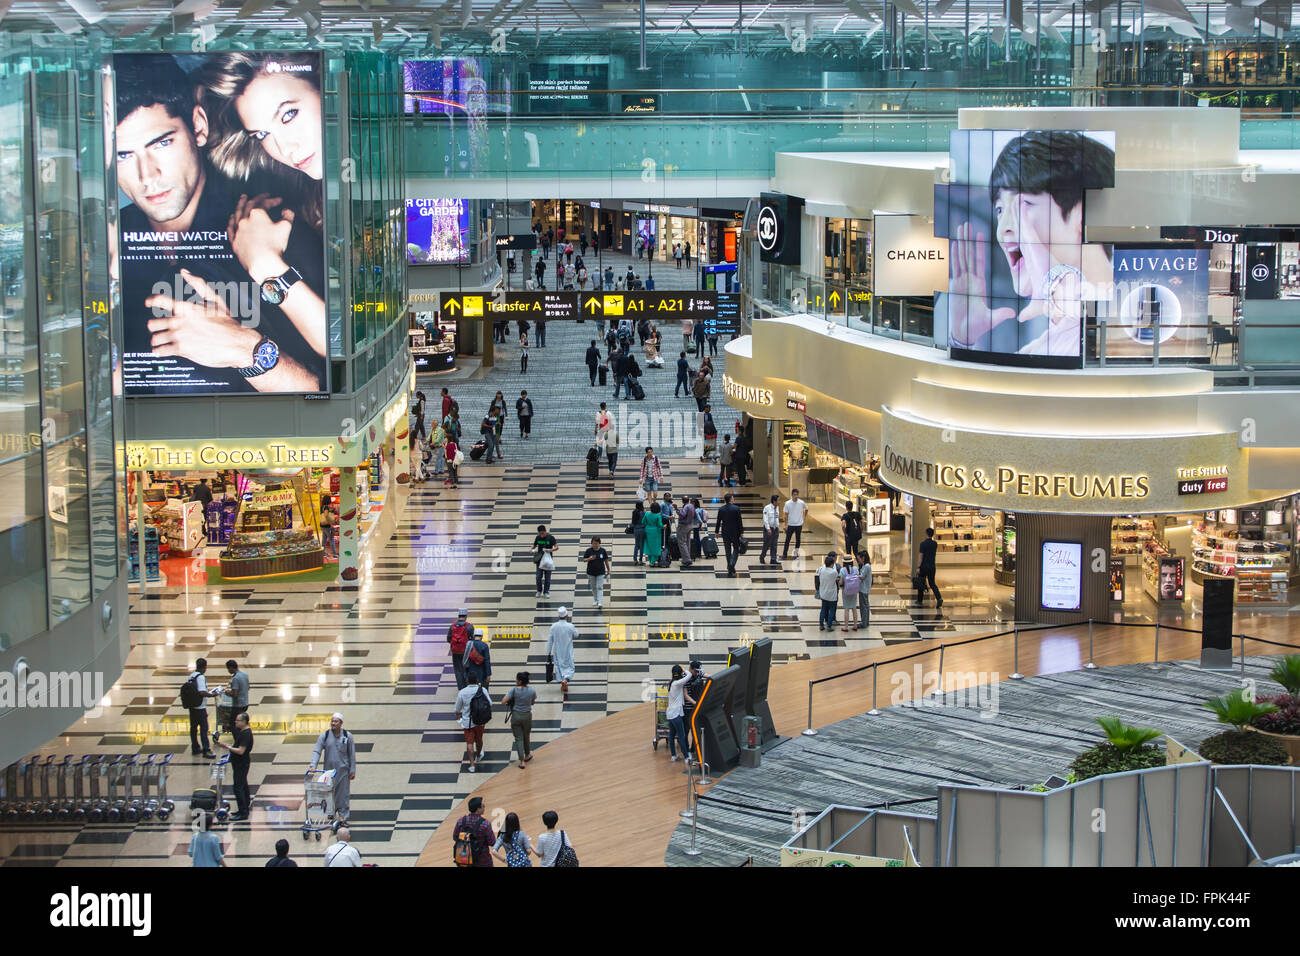 Les voyageurs peuvent profiter des achats de dernière minute pour acheter des articles hors taxes au lieu de transit du terminal 3 de l'aéroport de Changi avant de quitter le pays. Singapour. Banque D'Images